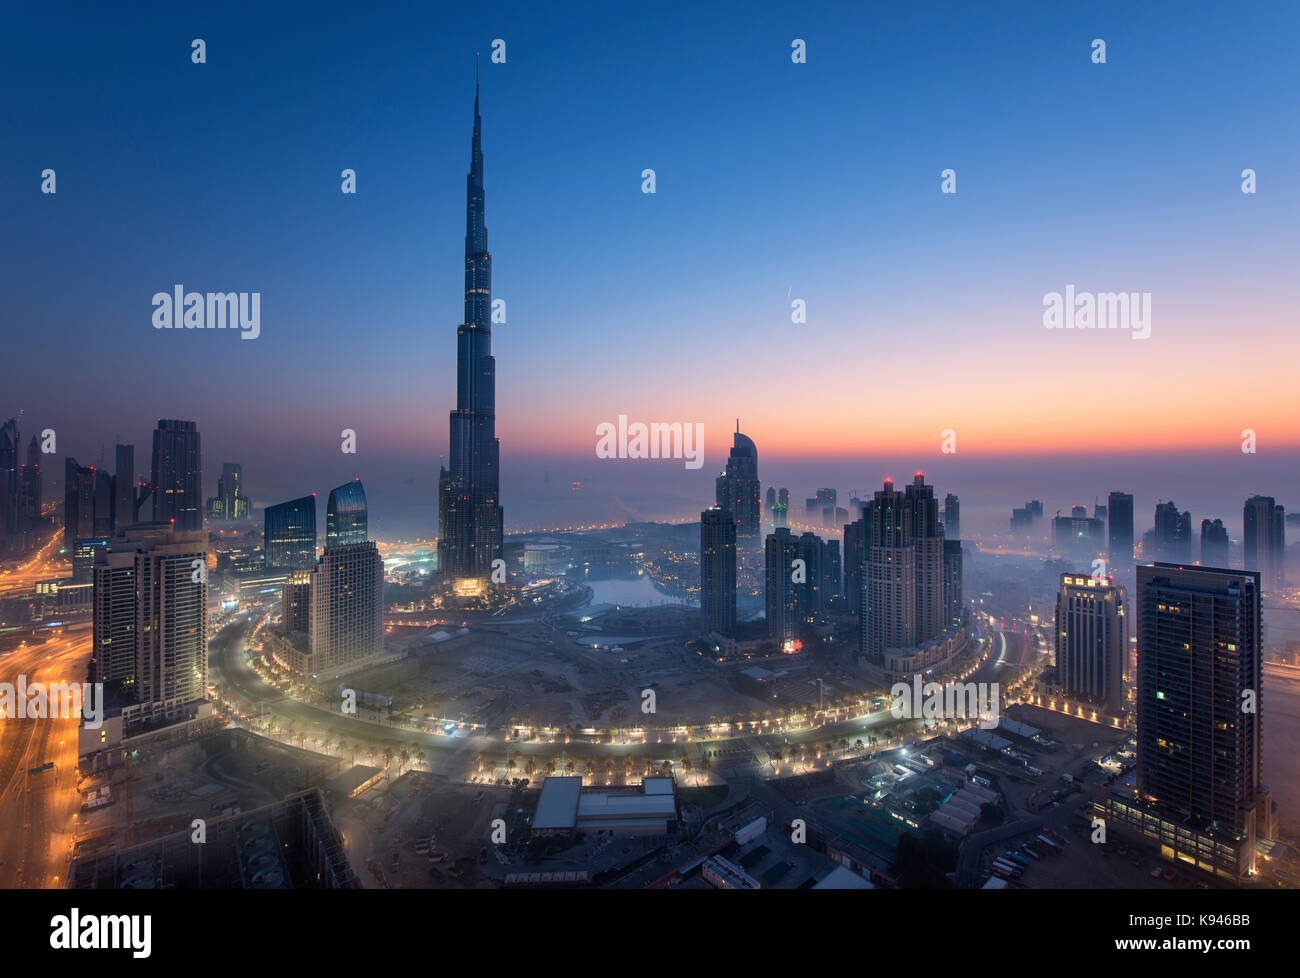 Cityscape di dubai, Emirati arabi uniti al tramonto con il Burj Khalifa grattacieli e palazzi illuminati in primo piano. Foto Stock